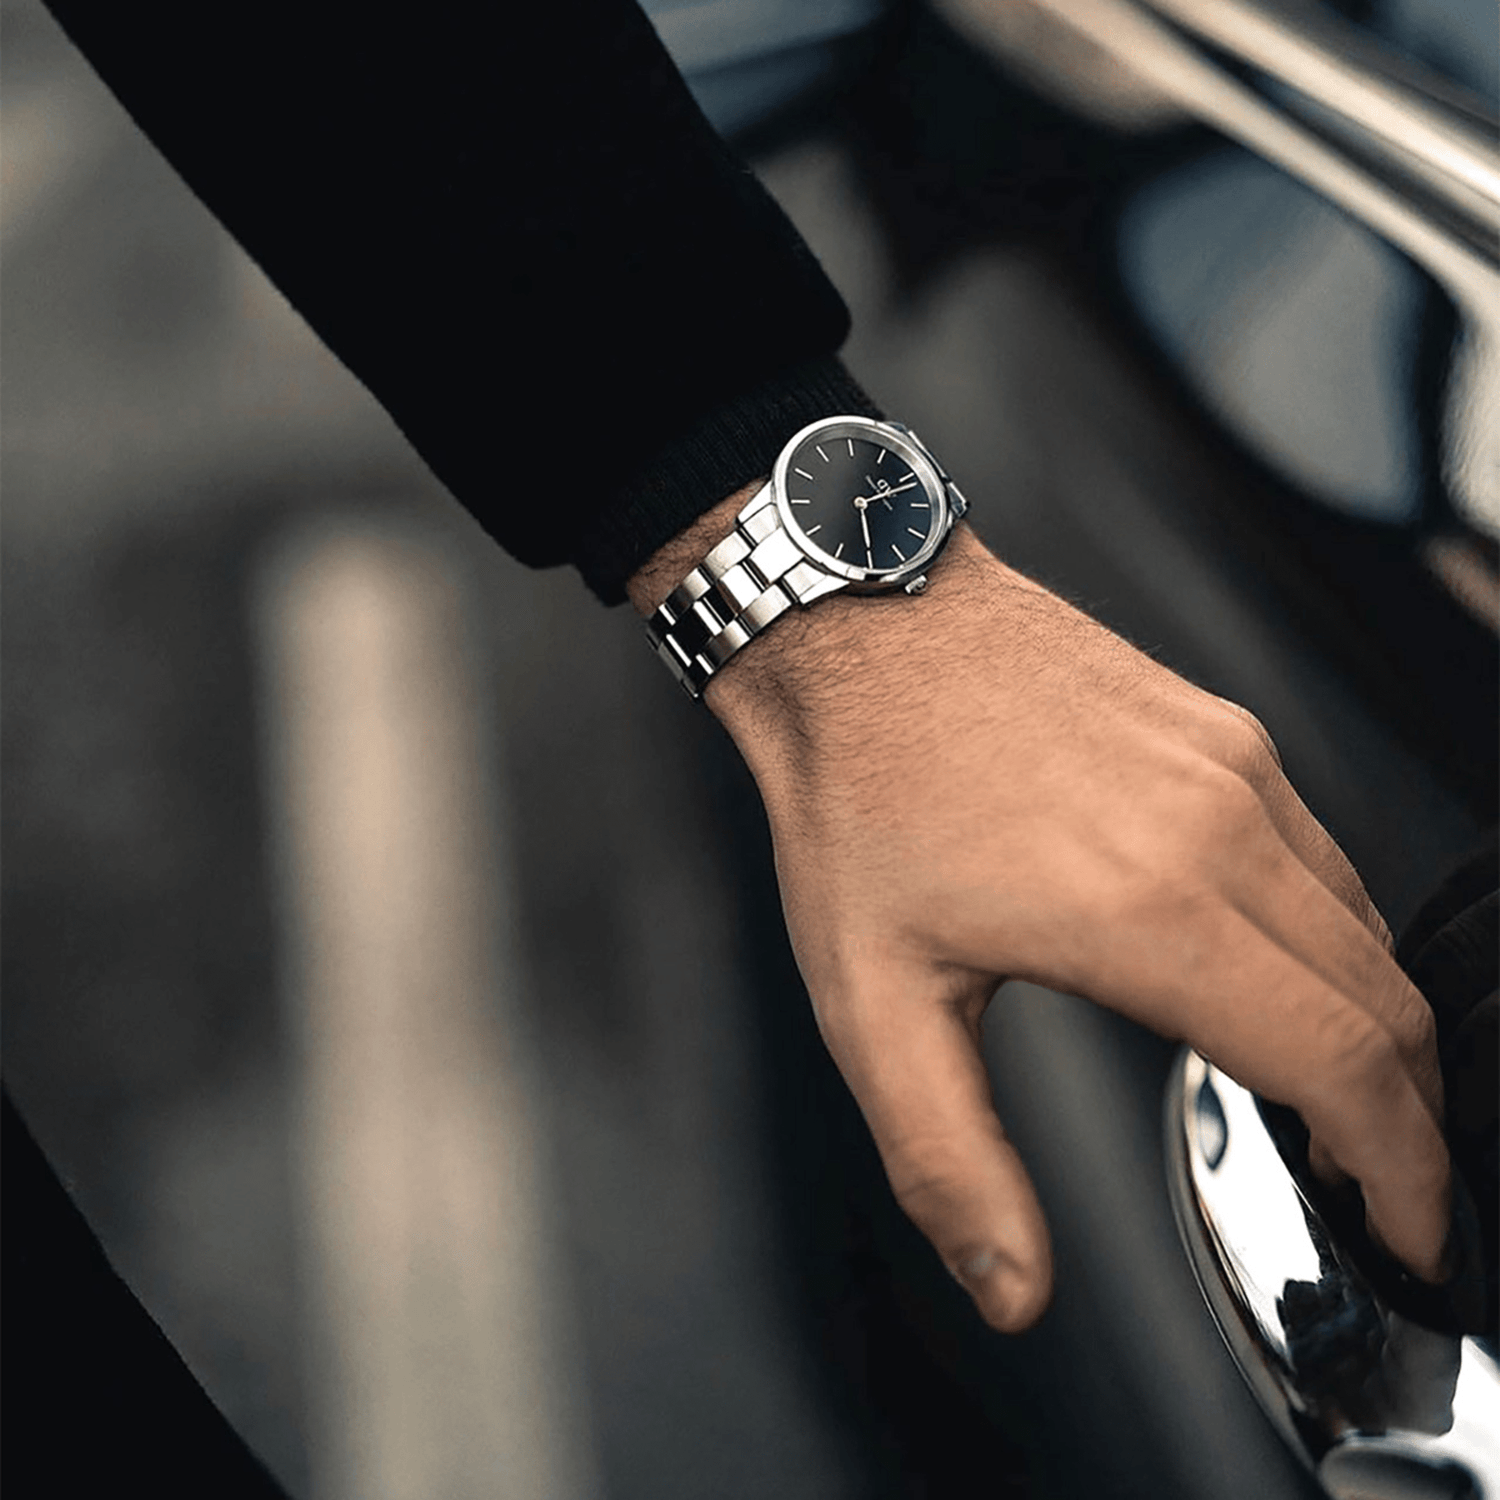 メンズ腕時計 - ダニエルウェリントンメンズ腕時計ラインナップ | DW